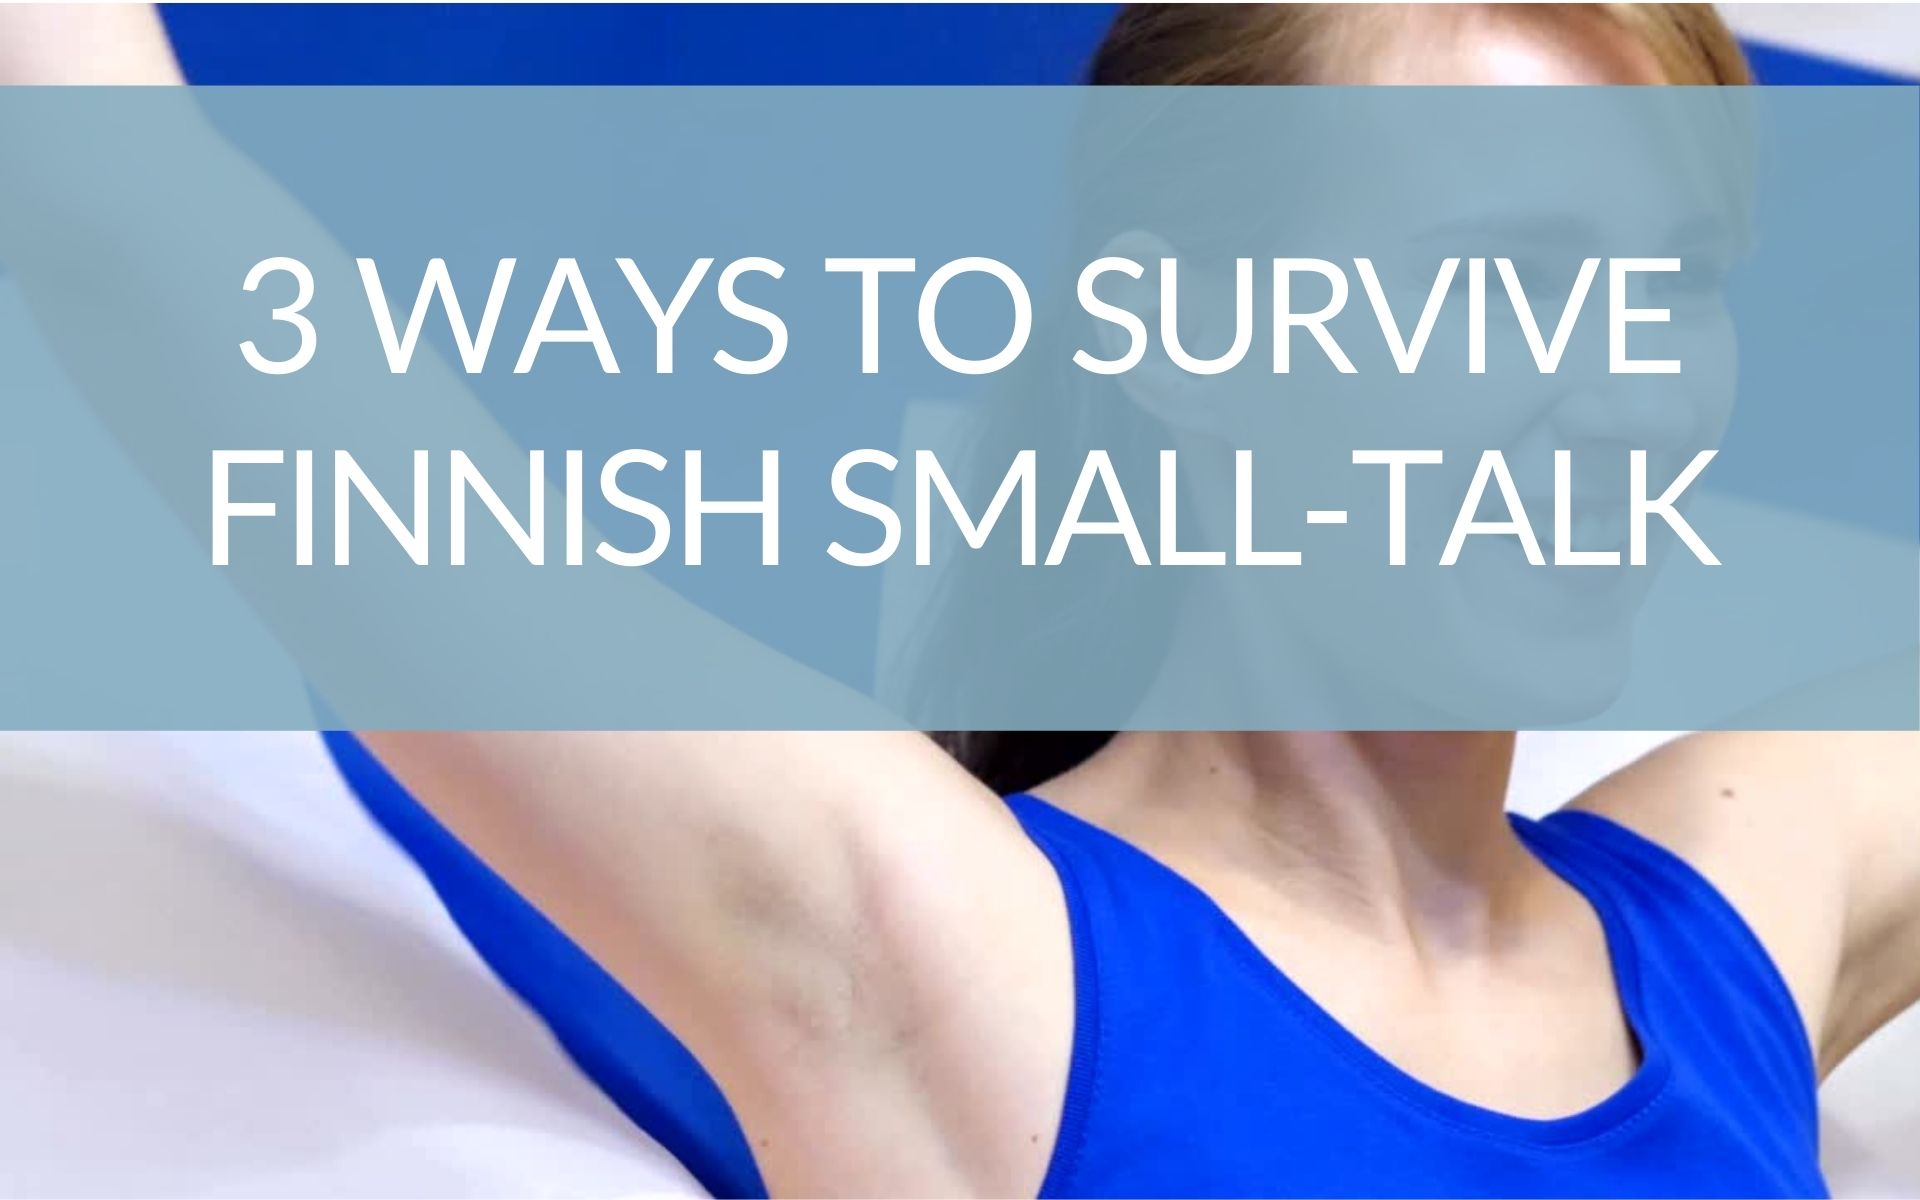 3 Ways to Survive Finnish Small-Talk (4)